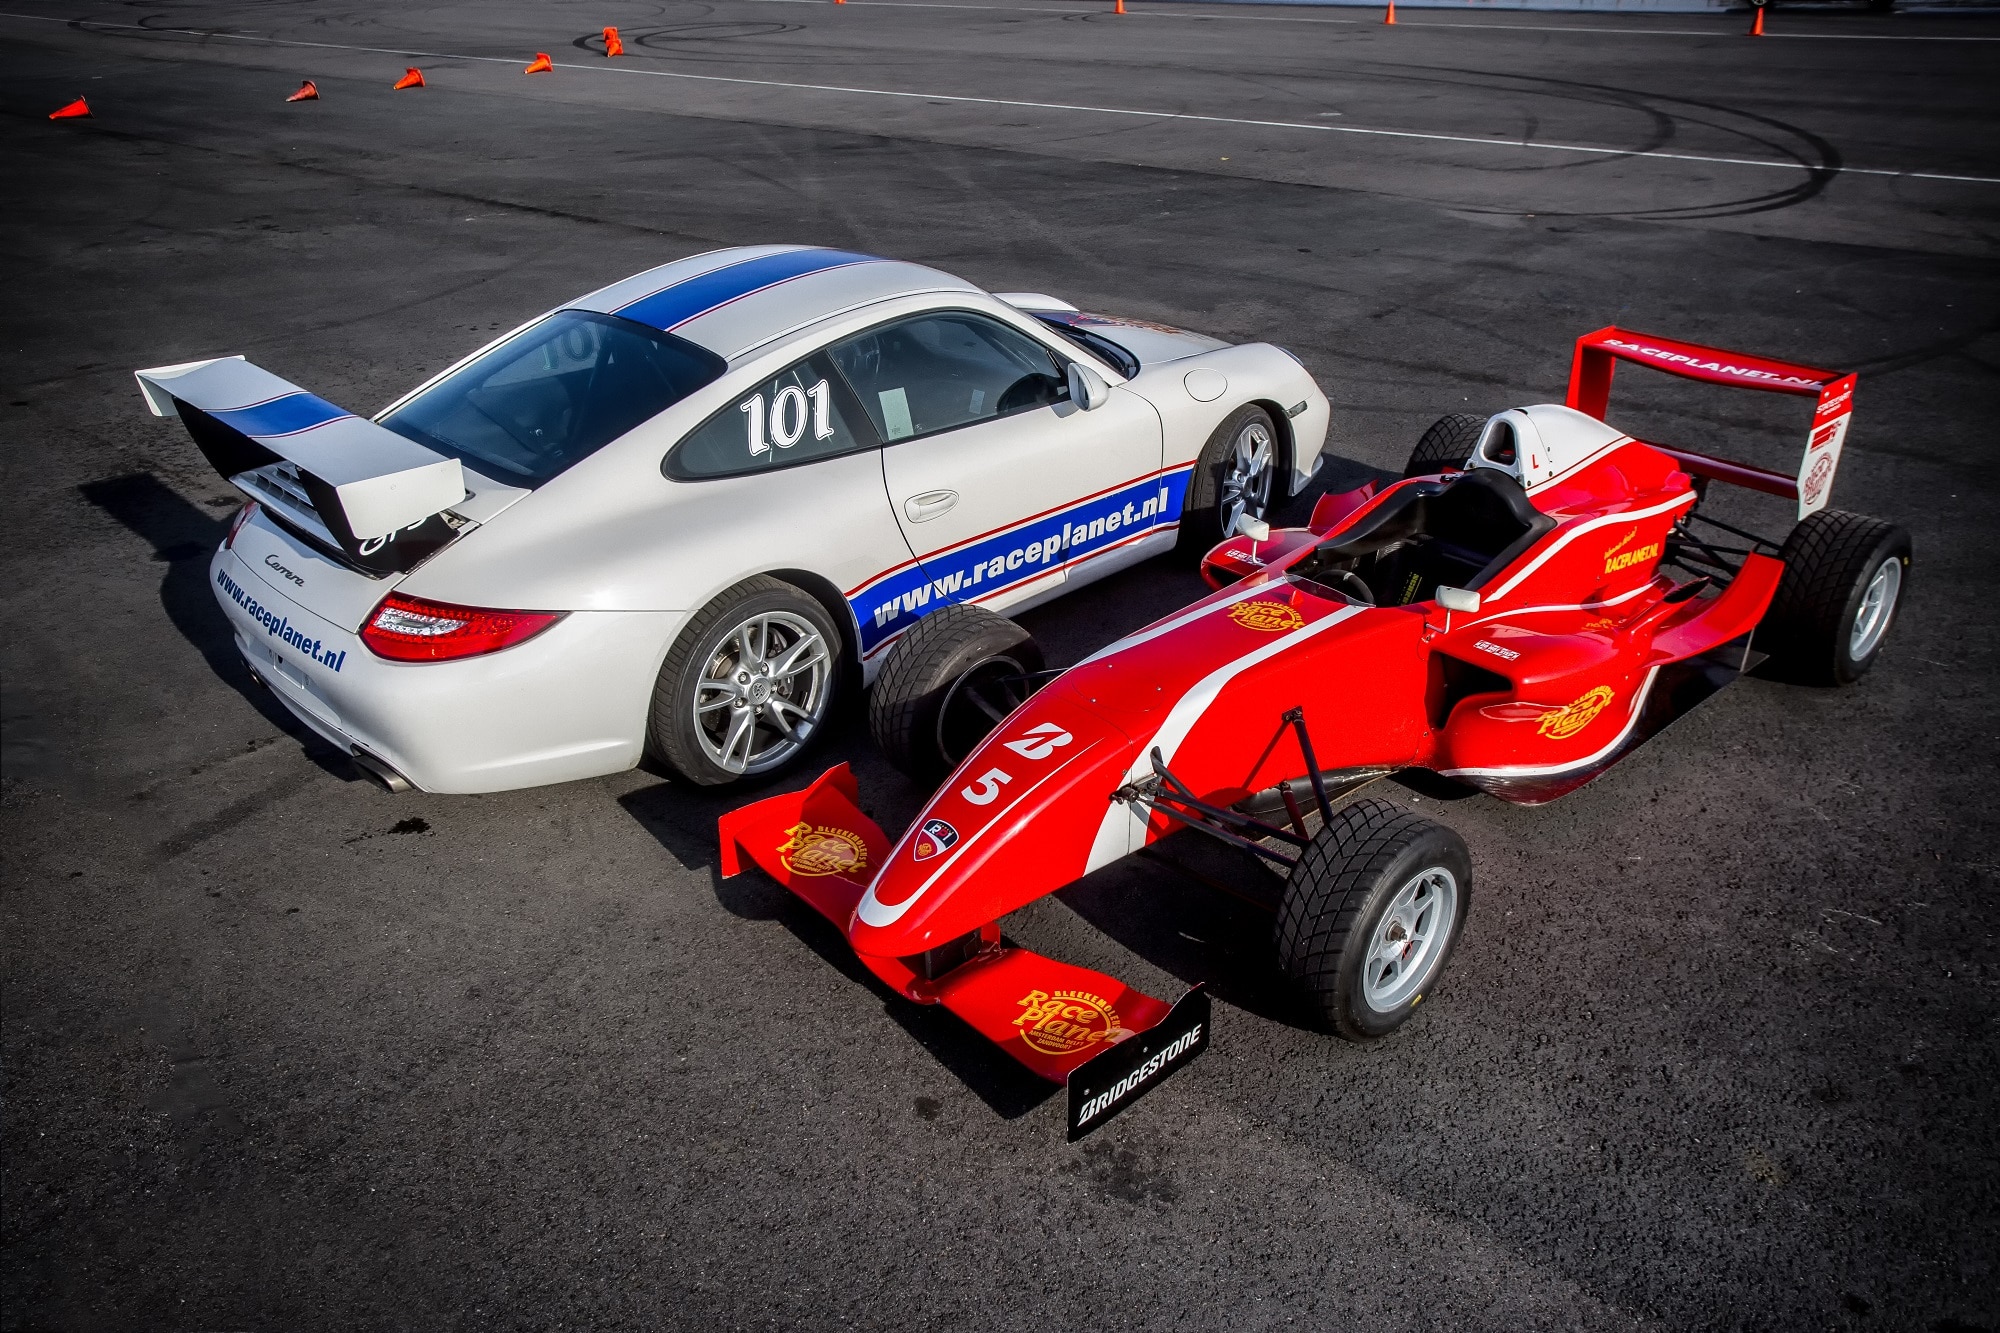 Deelnemers rijden met de Porsche 911 en Formule RP1 raceauto op Circuit Zandvoort tijdens de Driving Experience van Race Planet